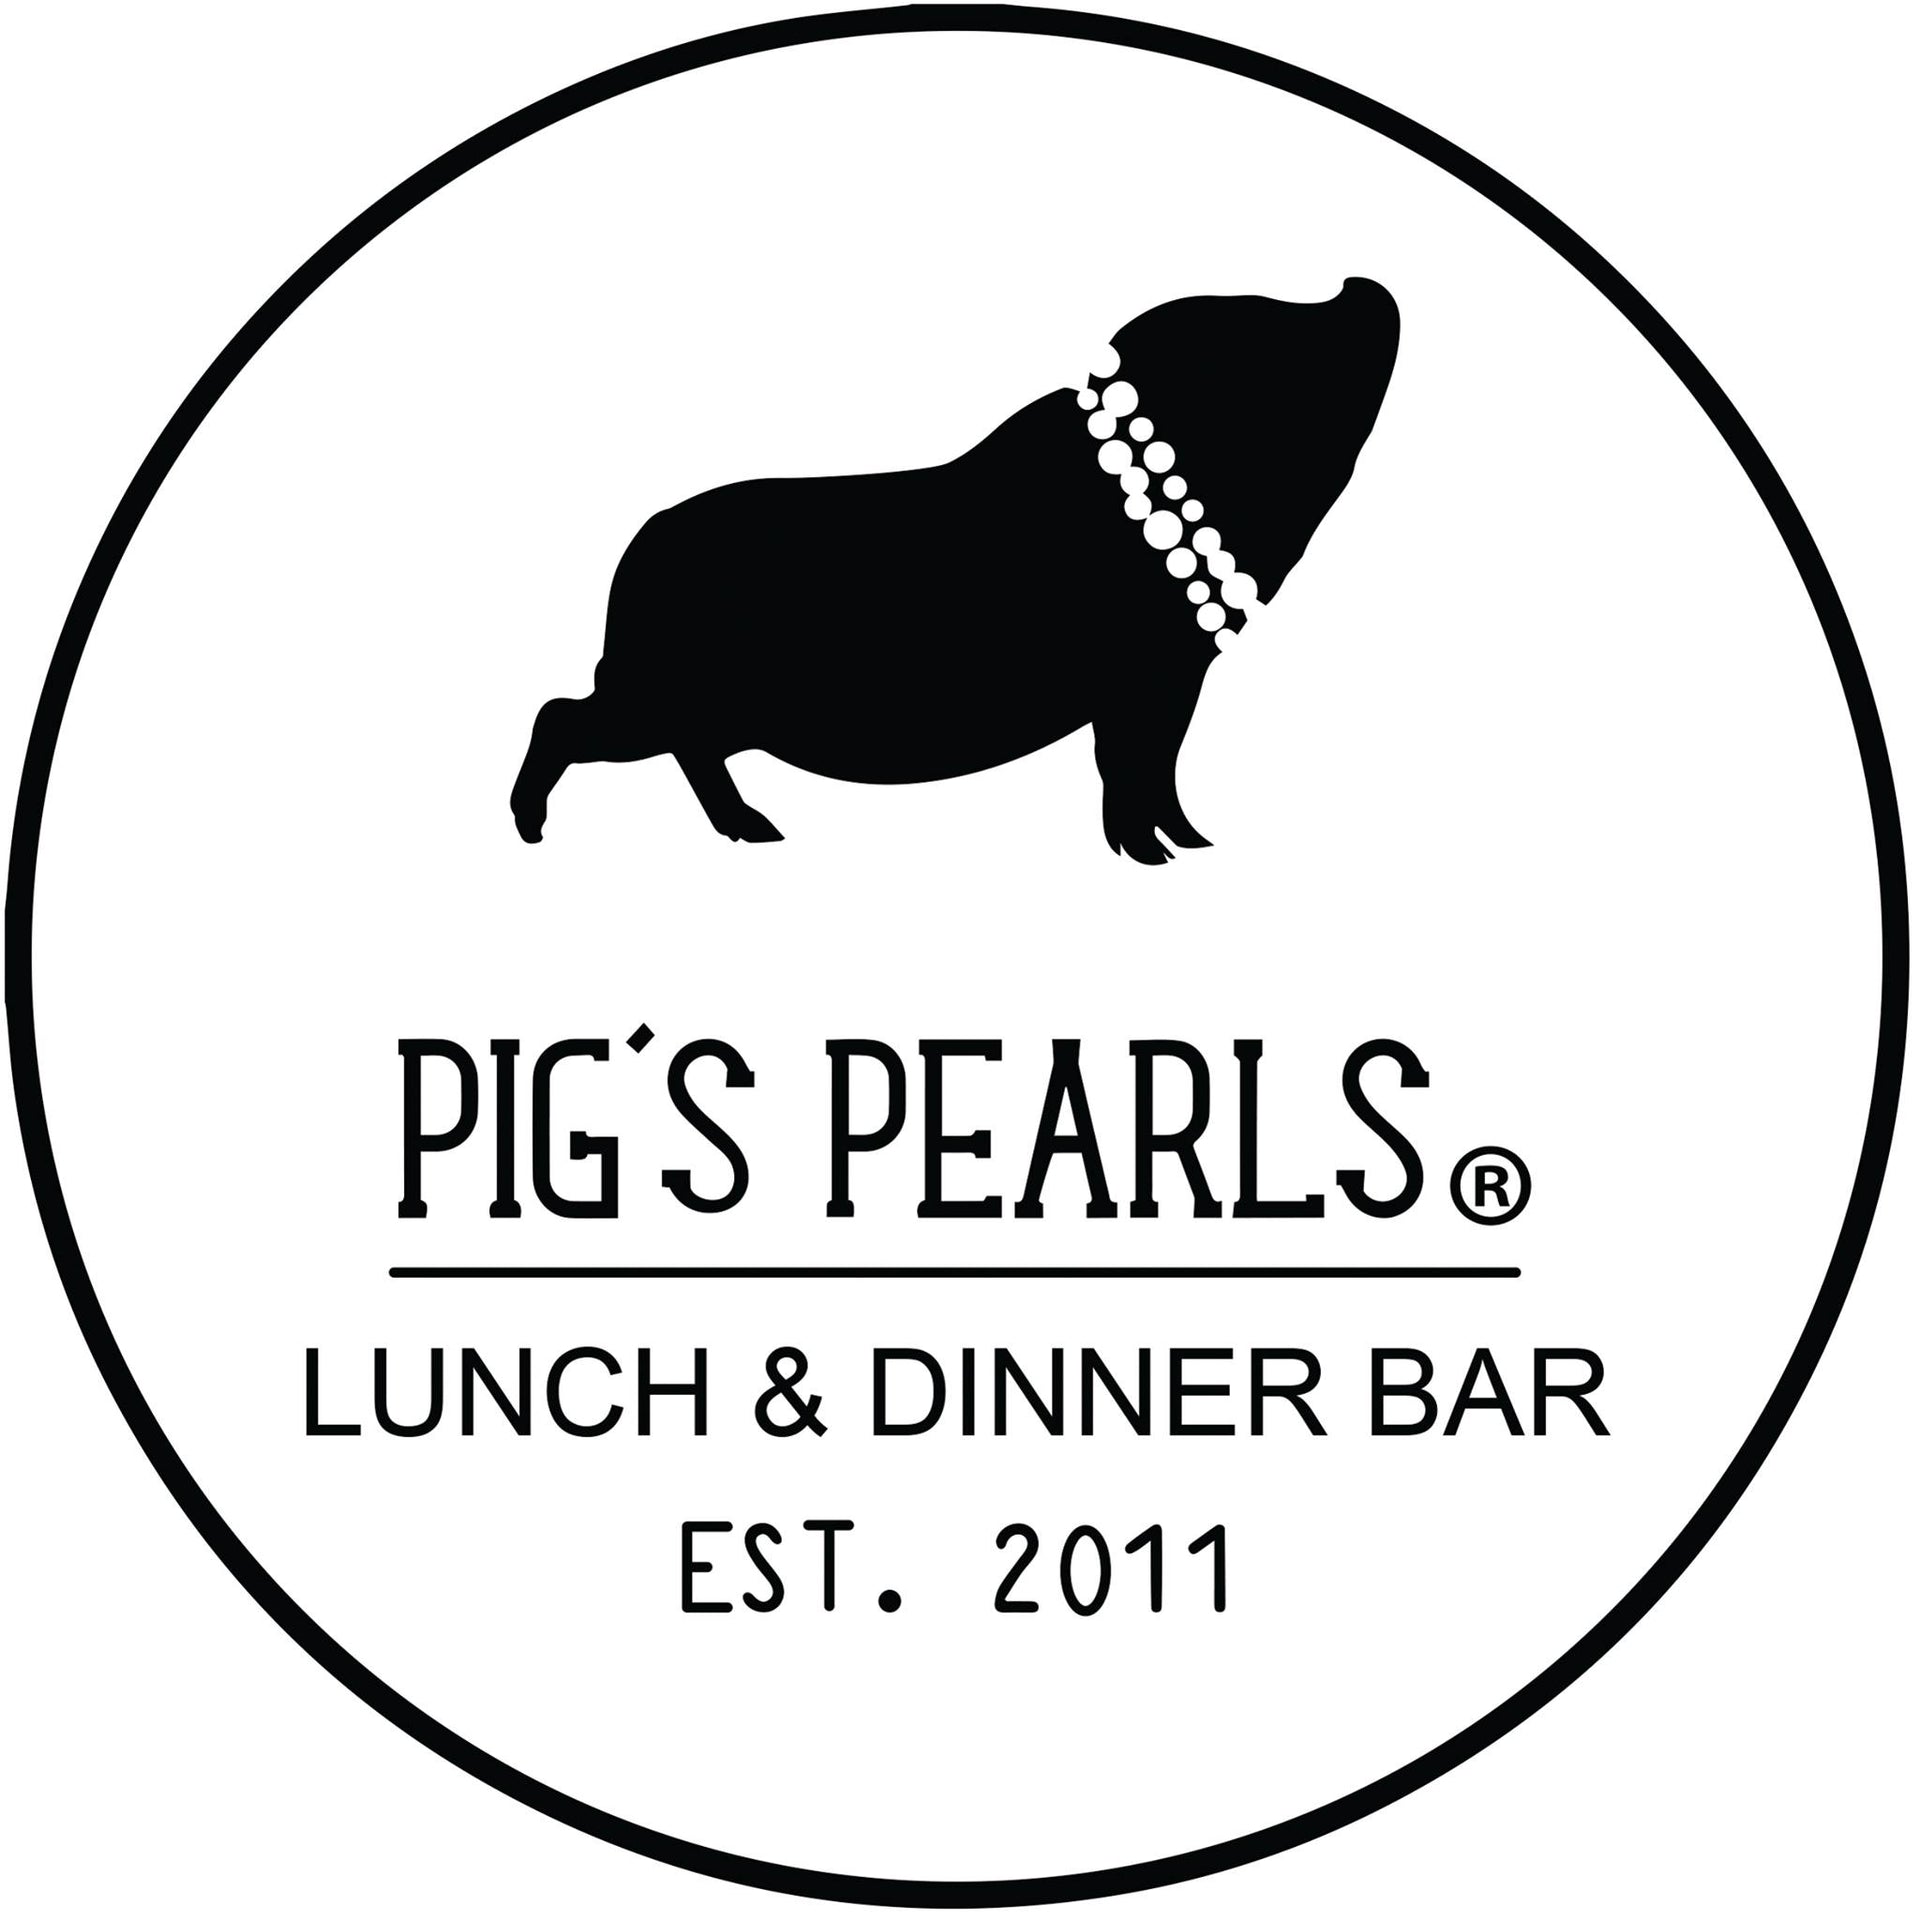 Pigs Pearls